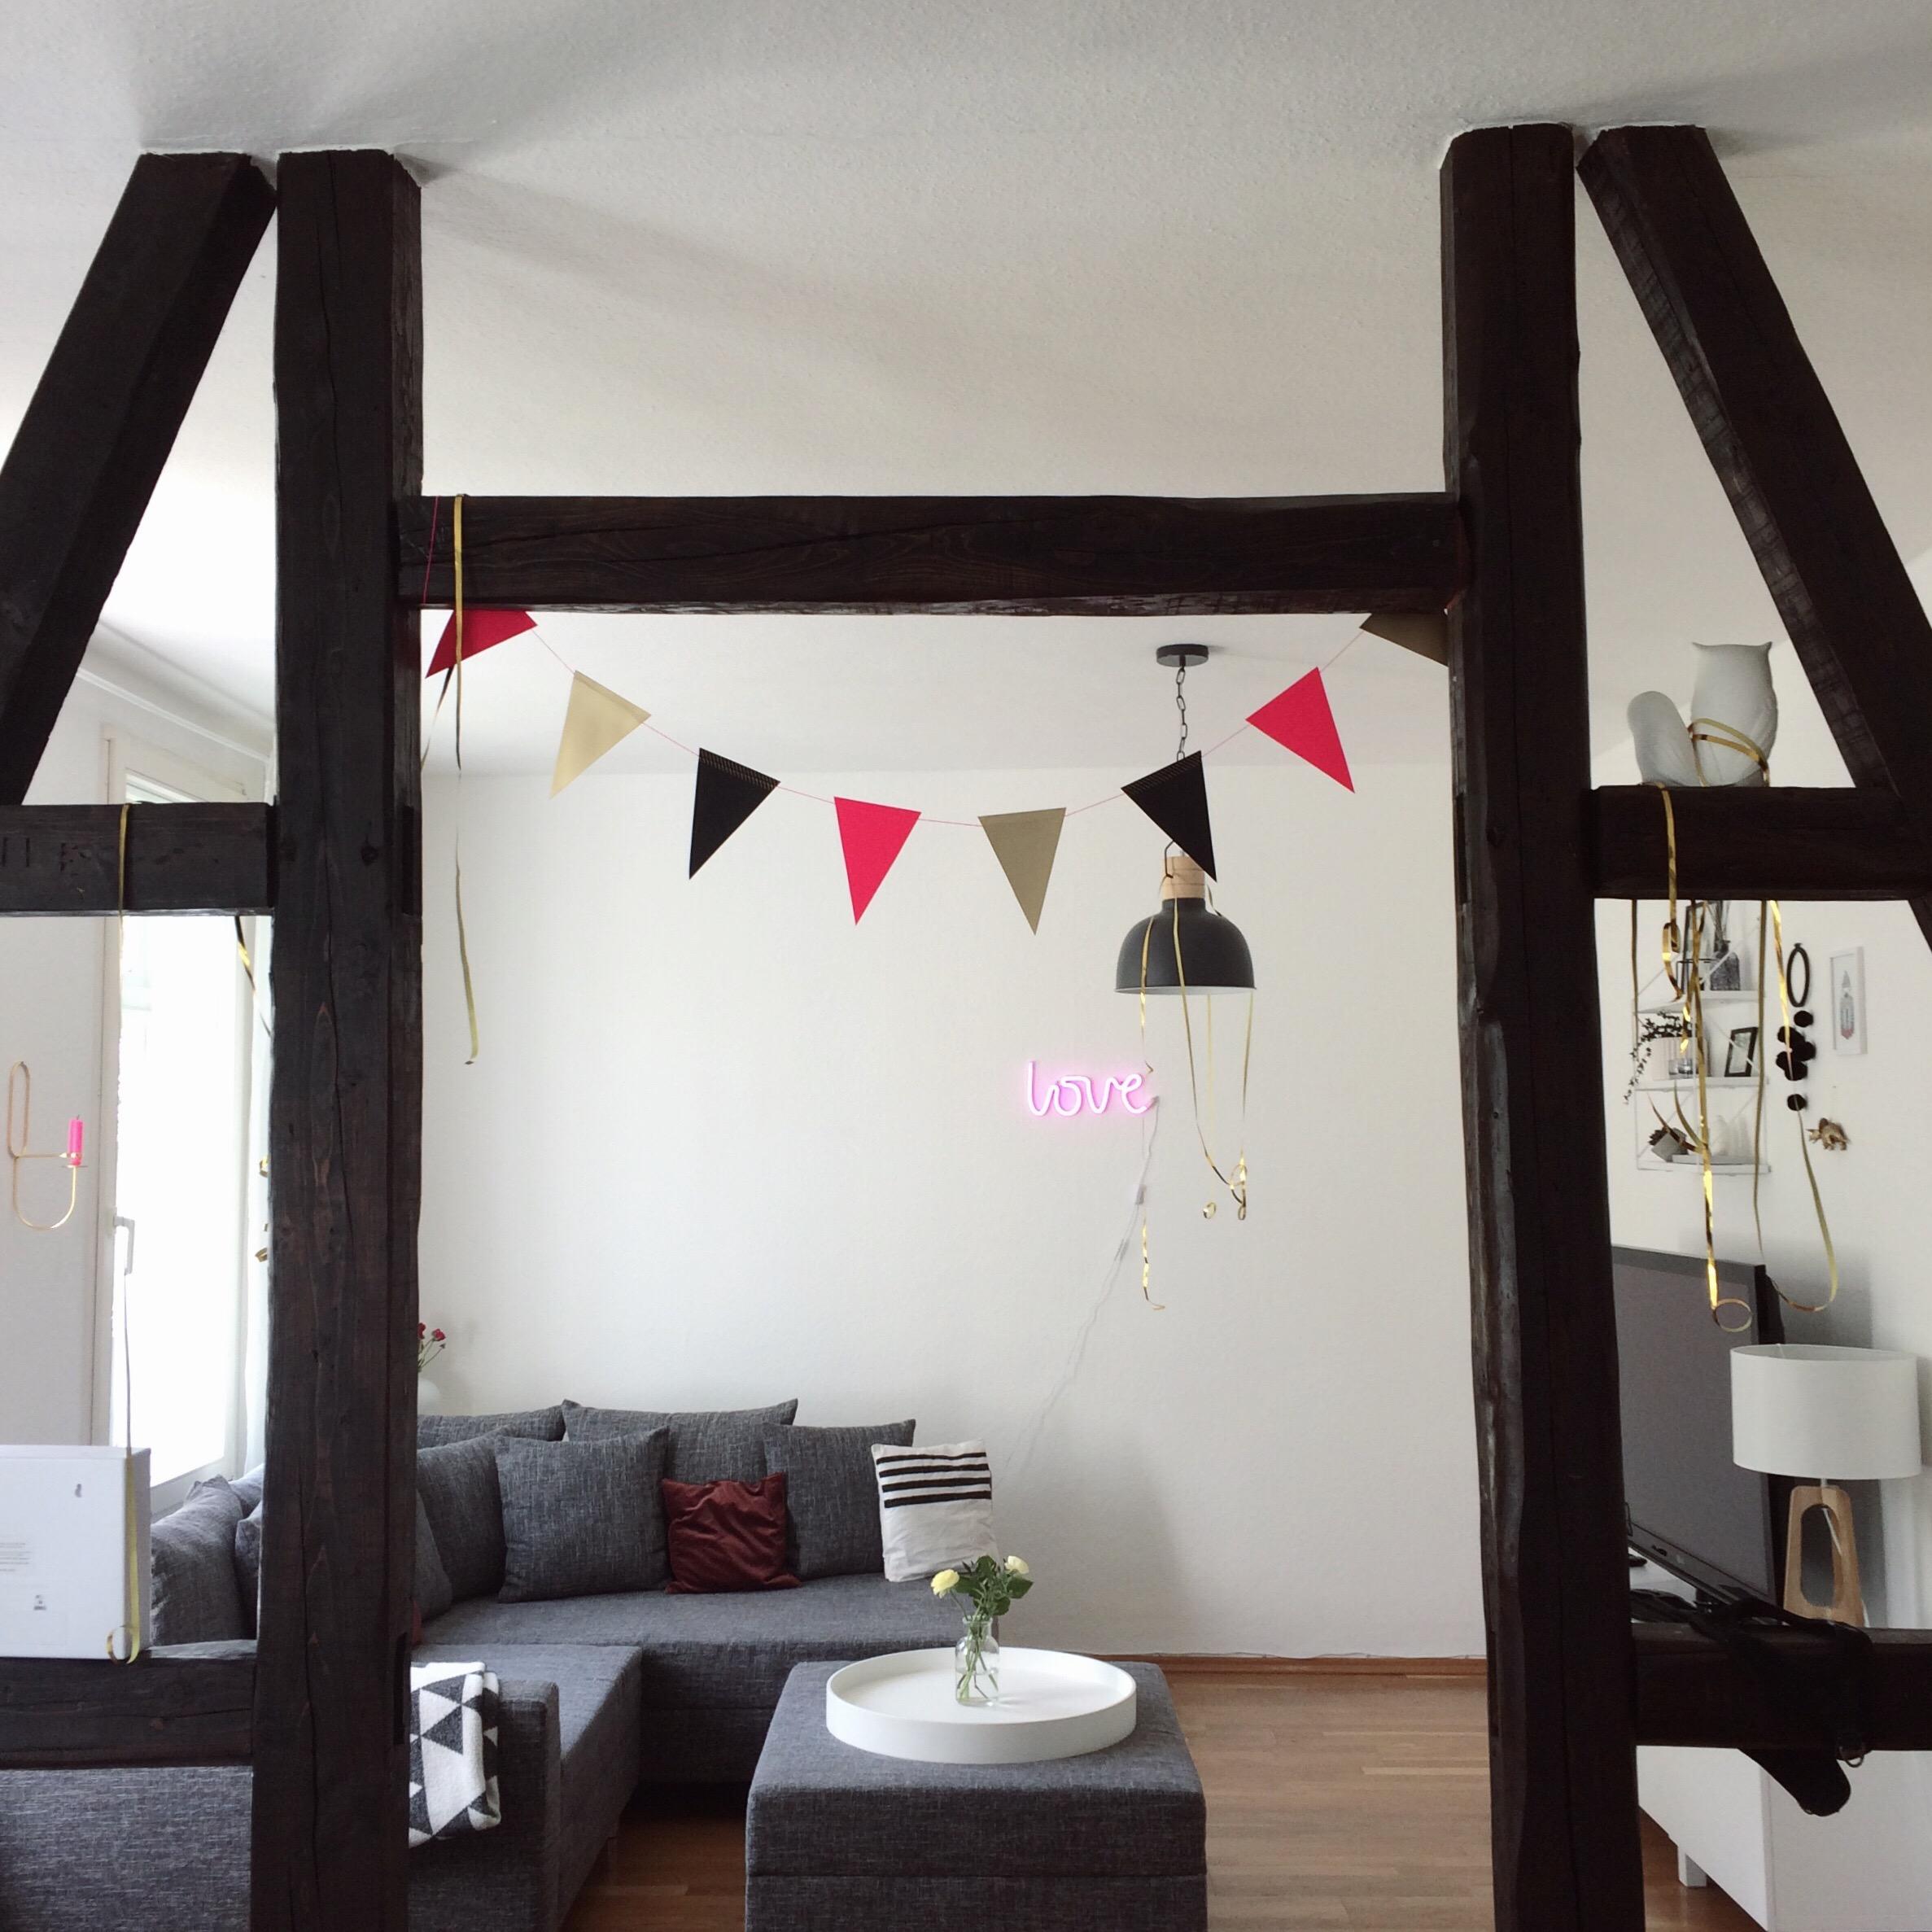 Kleine Geburtstagssause zu Hause 💕
#altbau #fachwerk #party #wohnzimmer #couchliebt #scandistyle